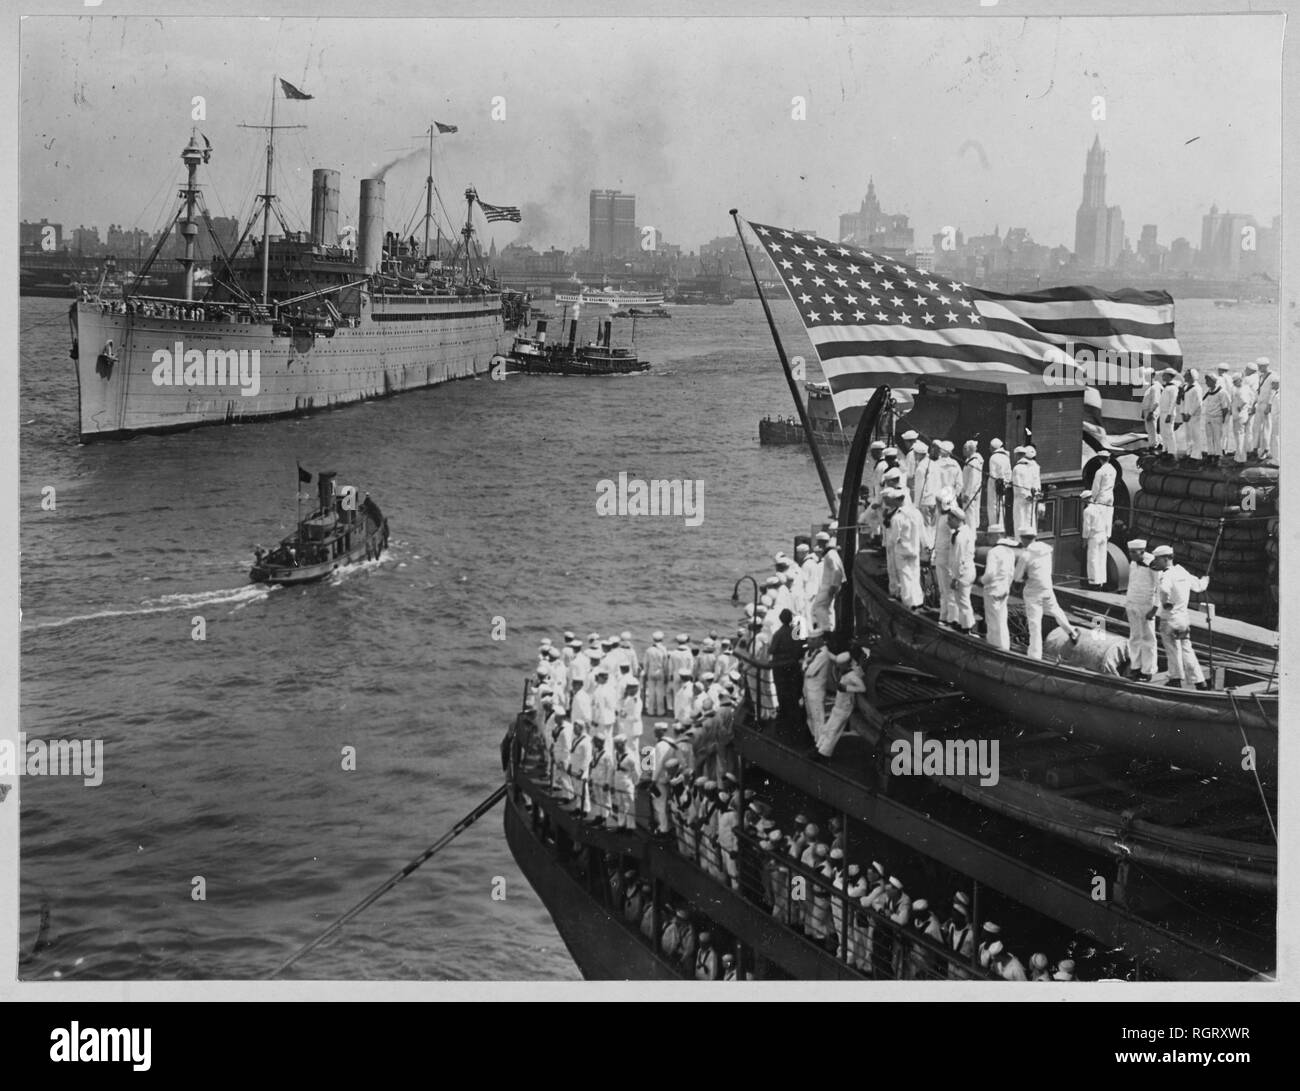 Kommt in den Hafen von New York mit Präsident Woodrow Wilson und seine Partei an Bord, wie Sie zurück in die USA aus dem Ersten Weltkrieg Frieden.jpg-RGRXWR Stockfoto